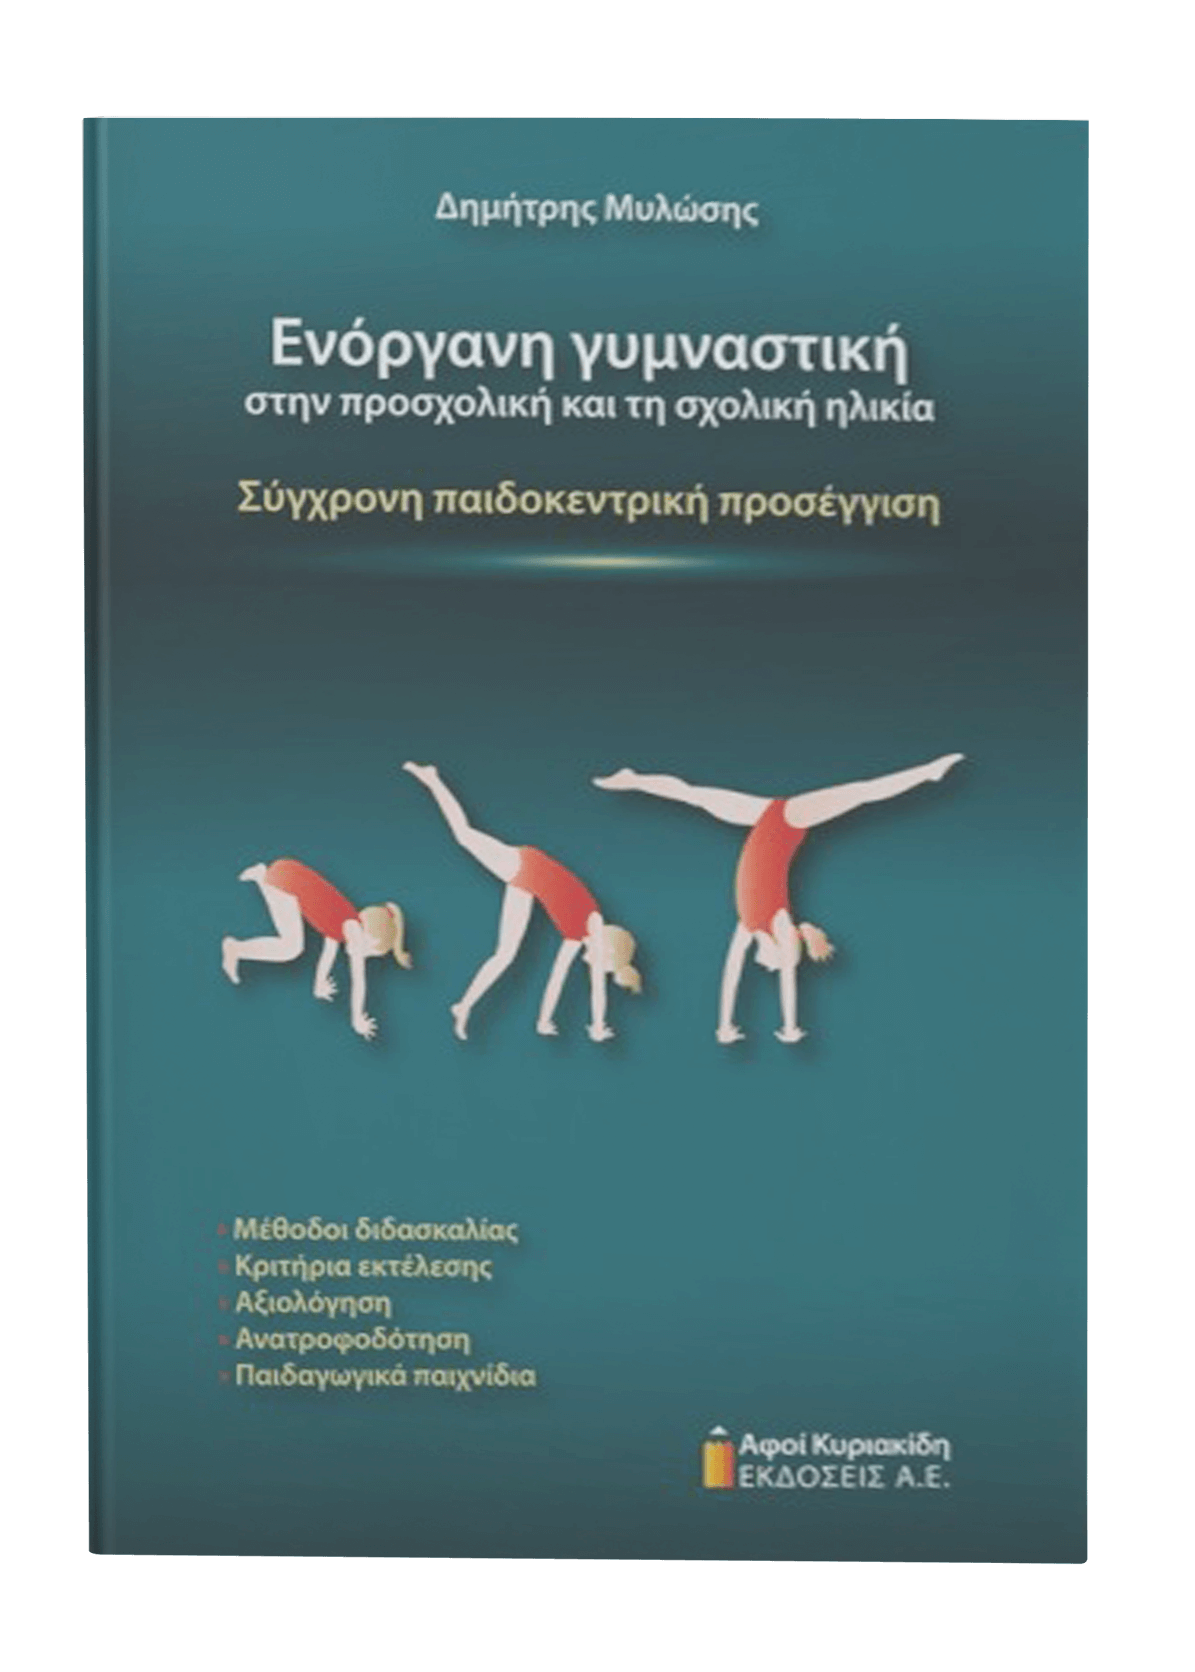 featured_enorgani-gymnastiki